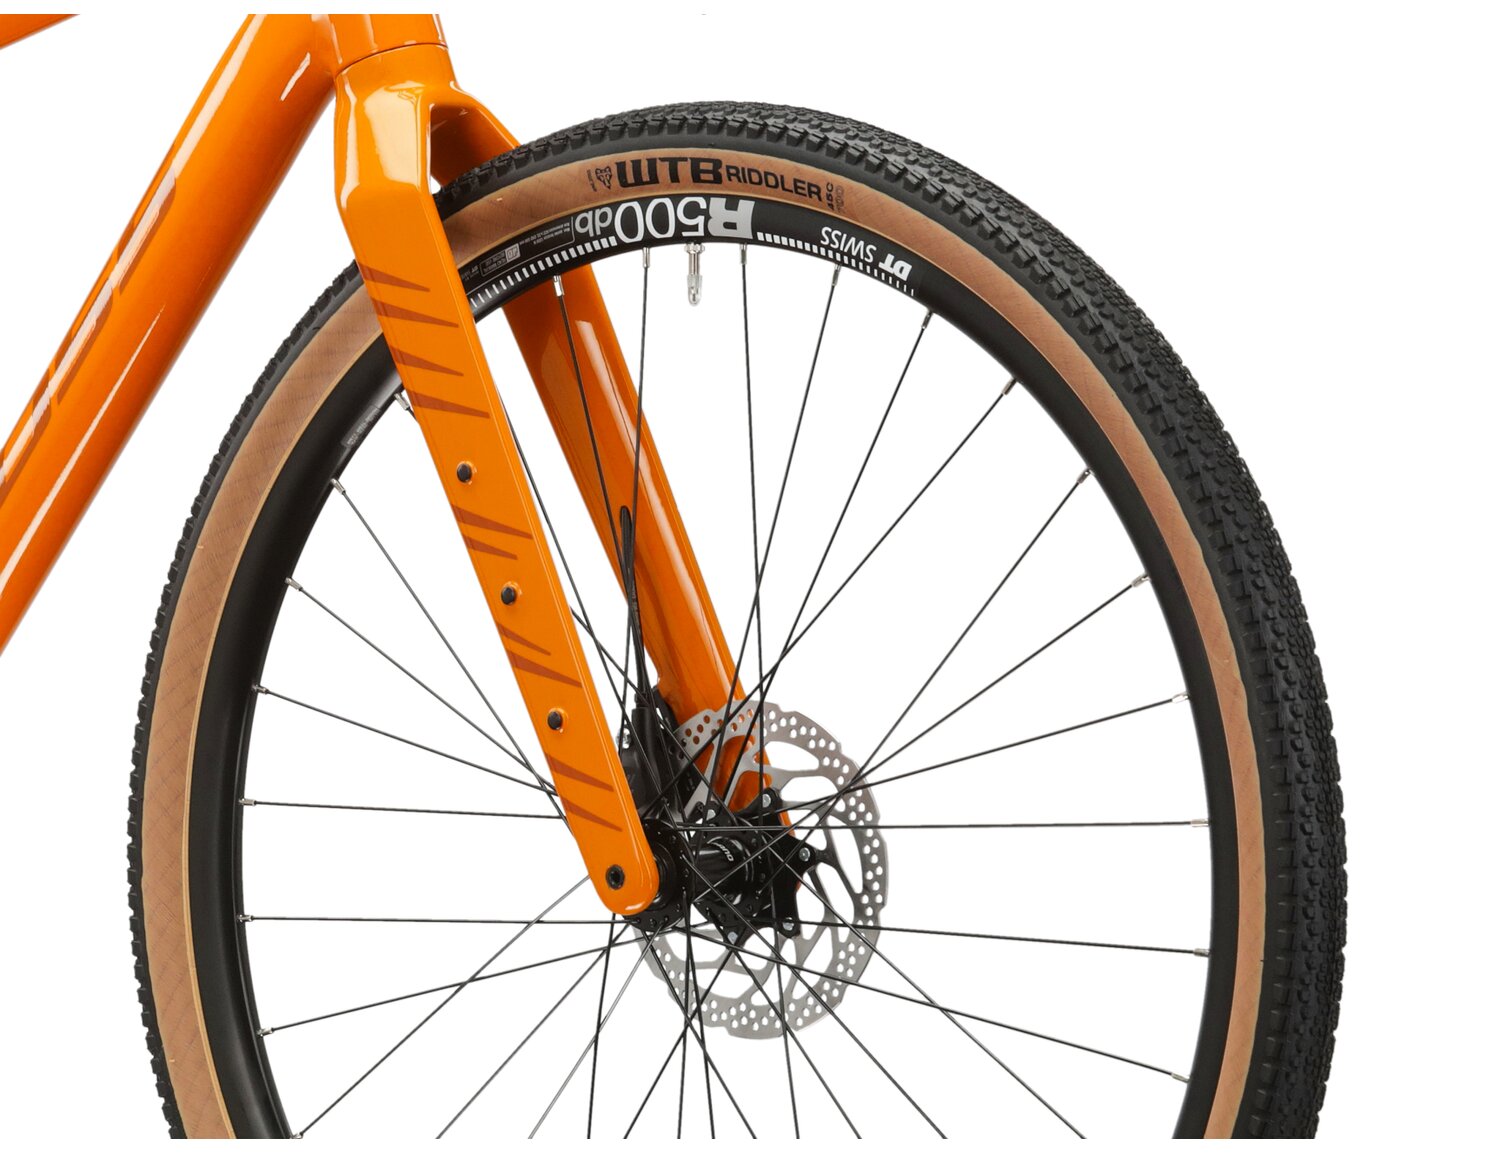  Sztywny carbonowy widelec, aluminiowa rama oraz opony WTB RIDDLER COMP 700x45c w rowerze gravelowym Kross Esker 5.0 